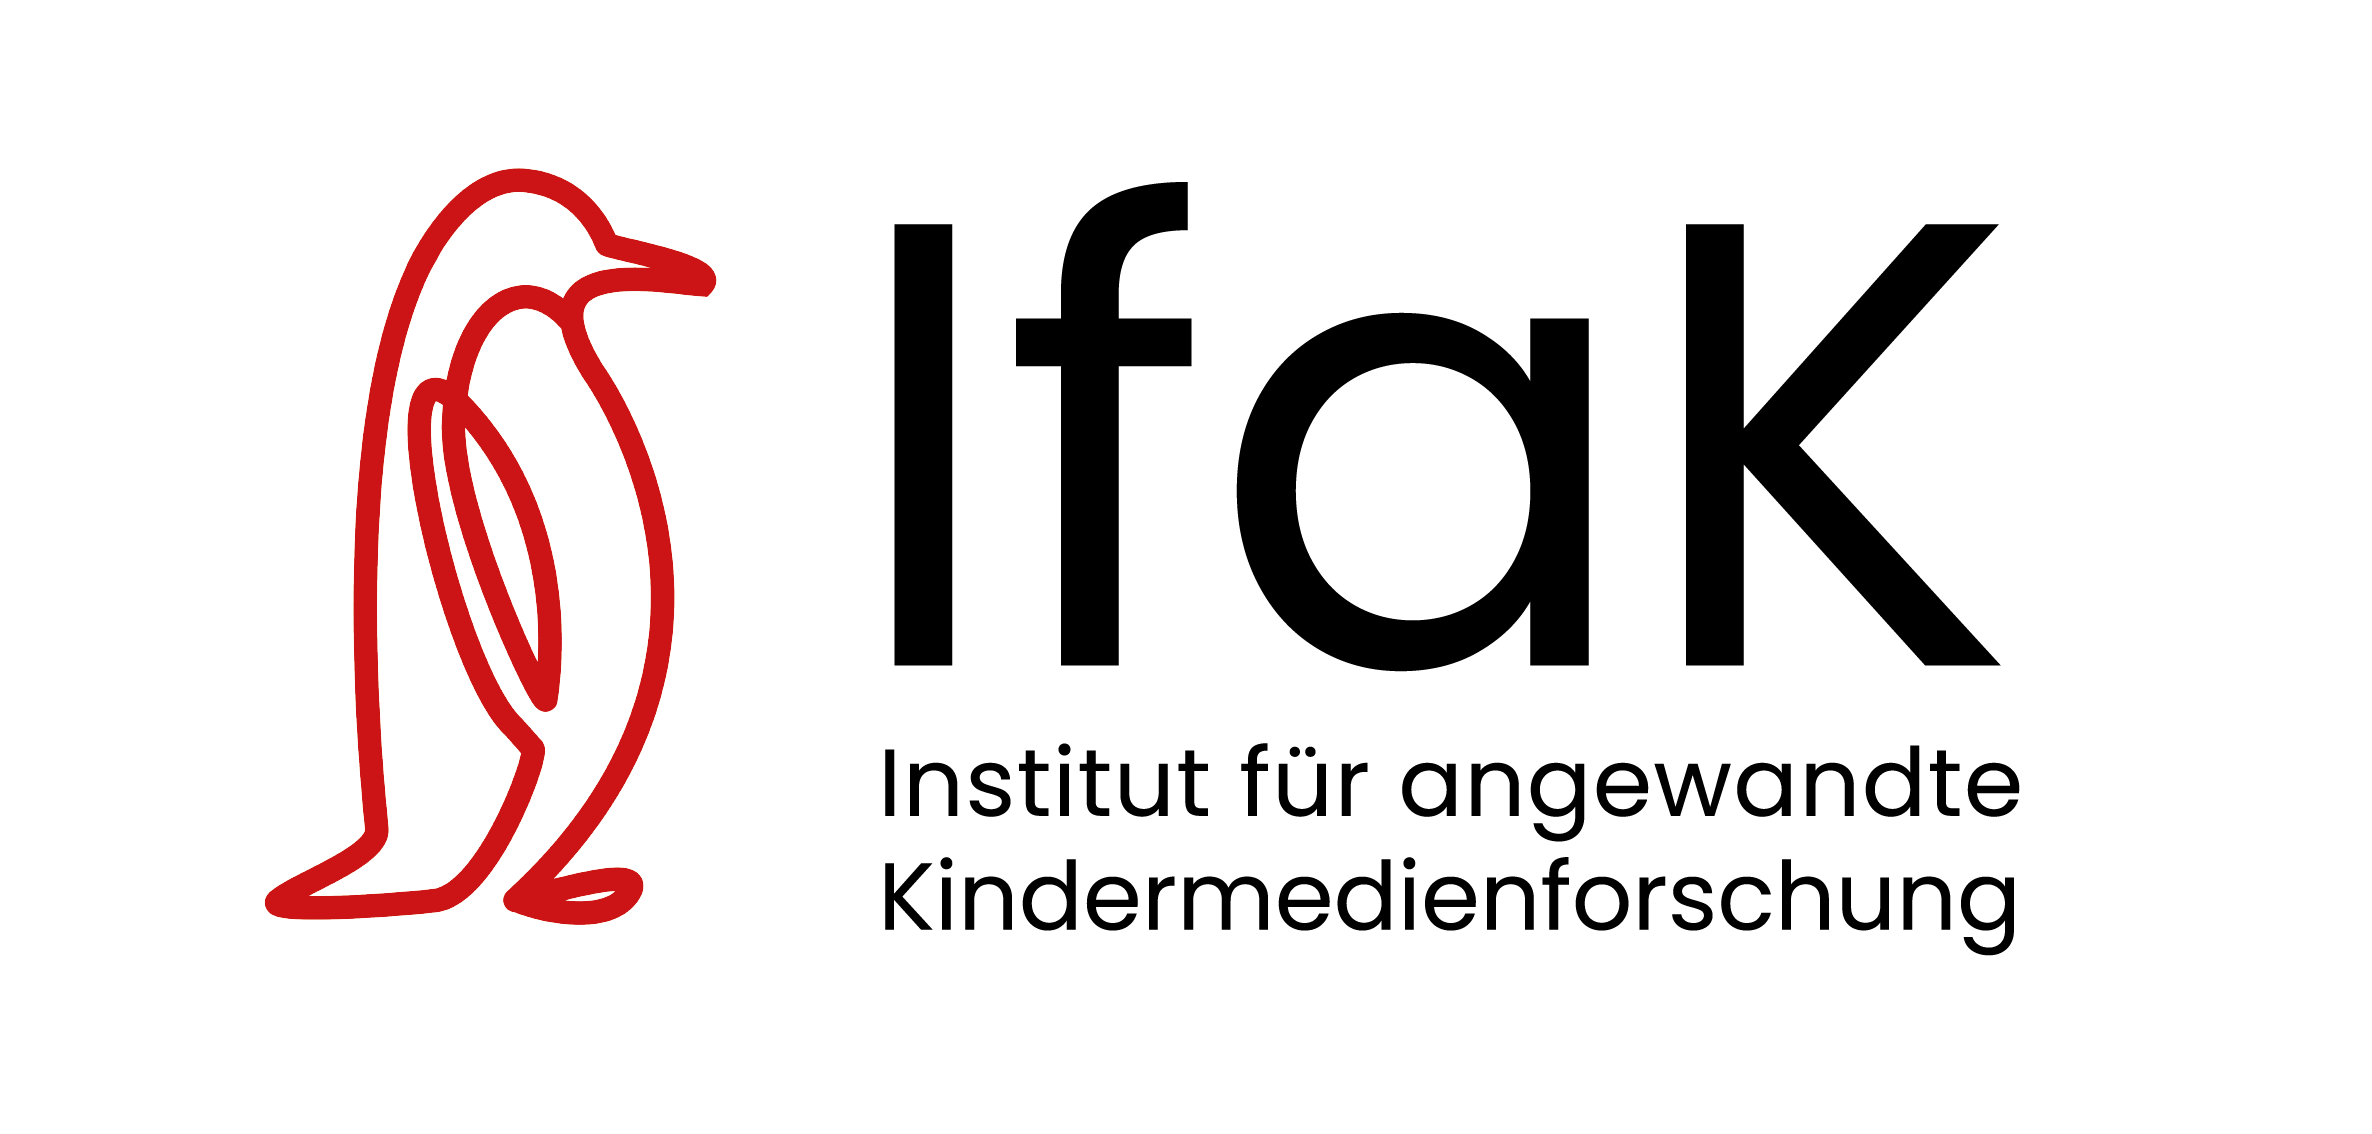 Das Logo des Institut für angewandte Kindermedienforschung